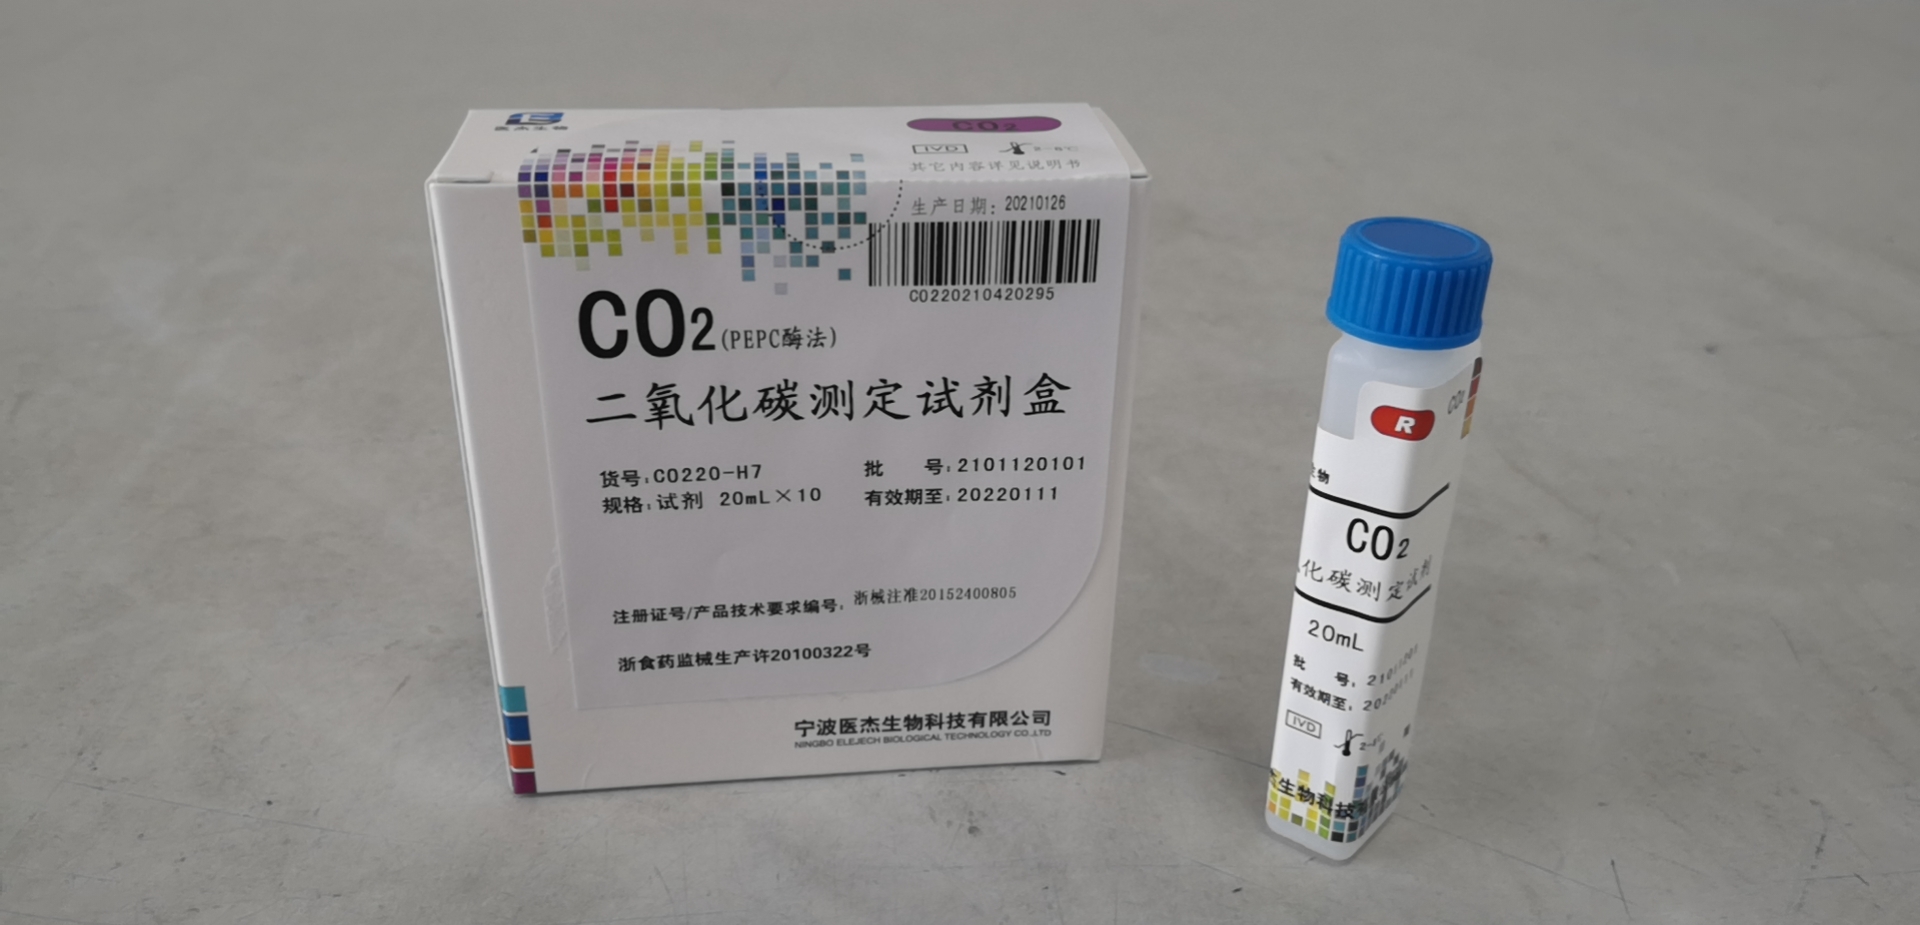 【医杰】二氧化碳测定试剂盒(PEPC酶法)